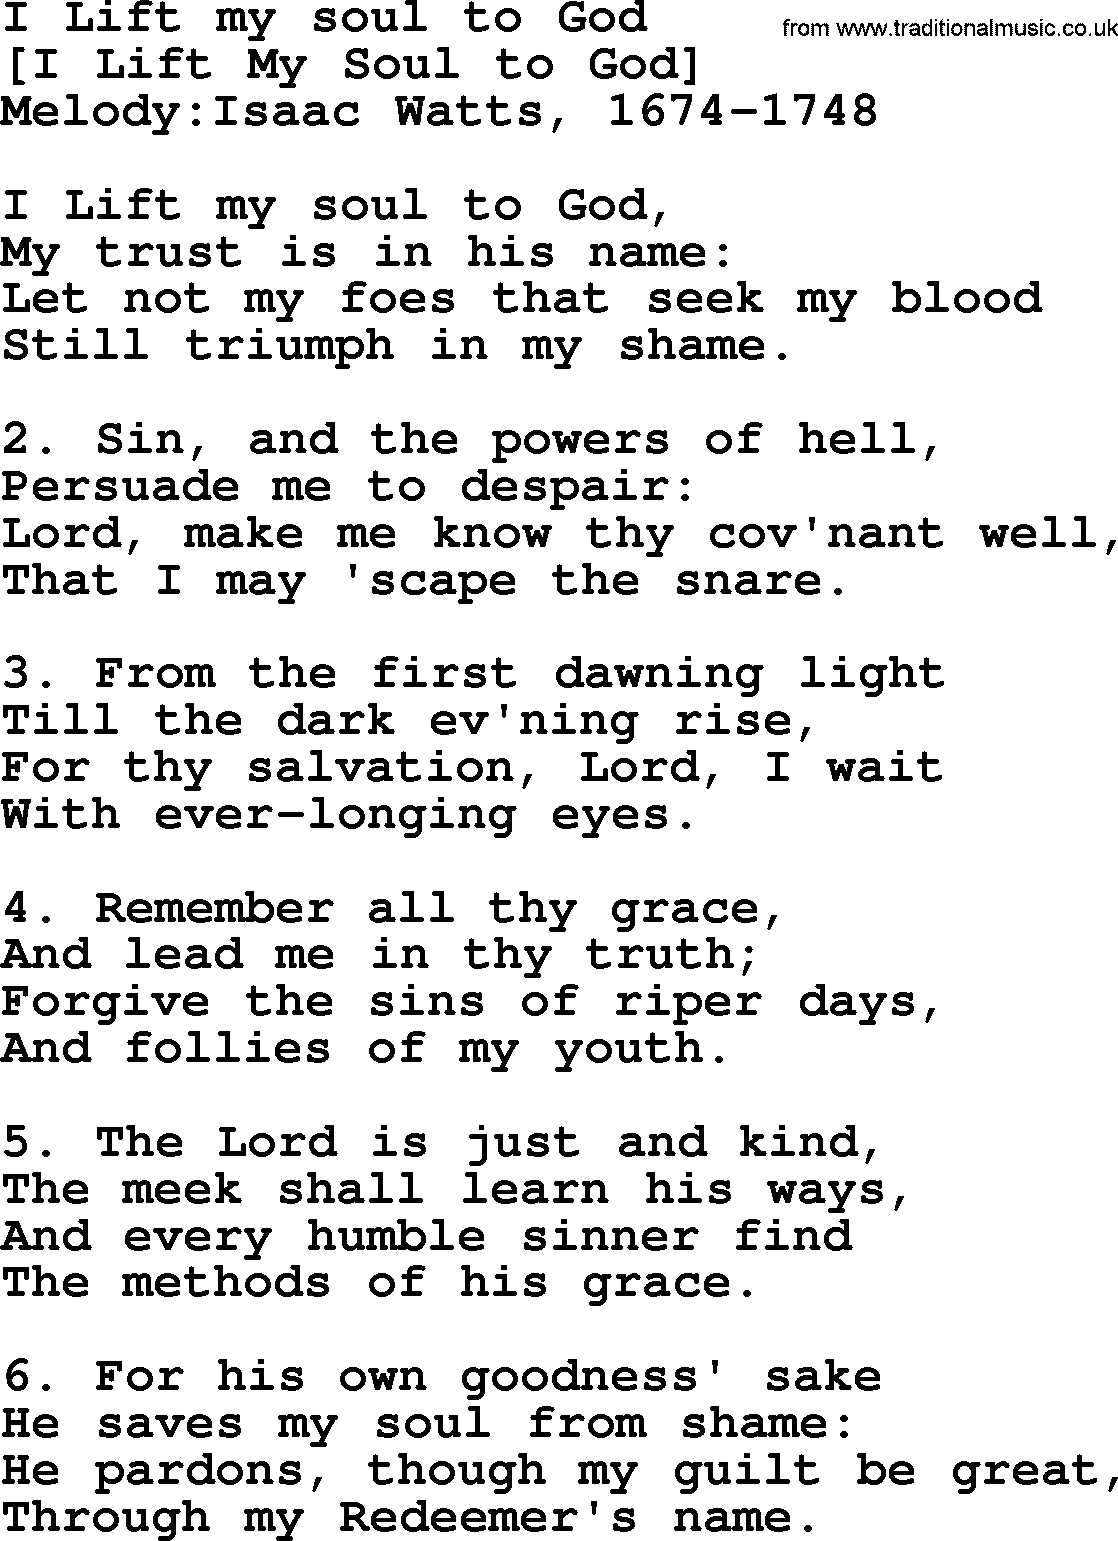 Old English Song: I Lift My Soul To God lyrics